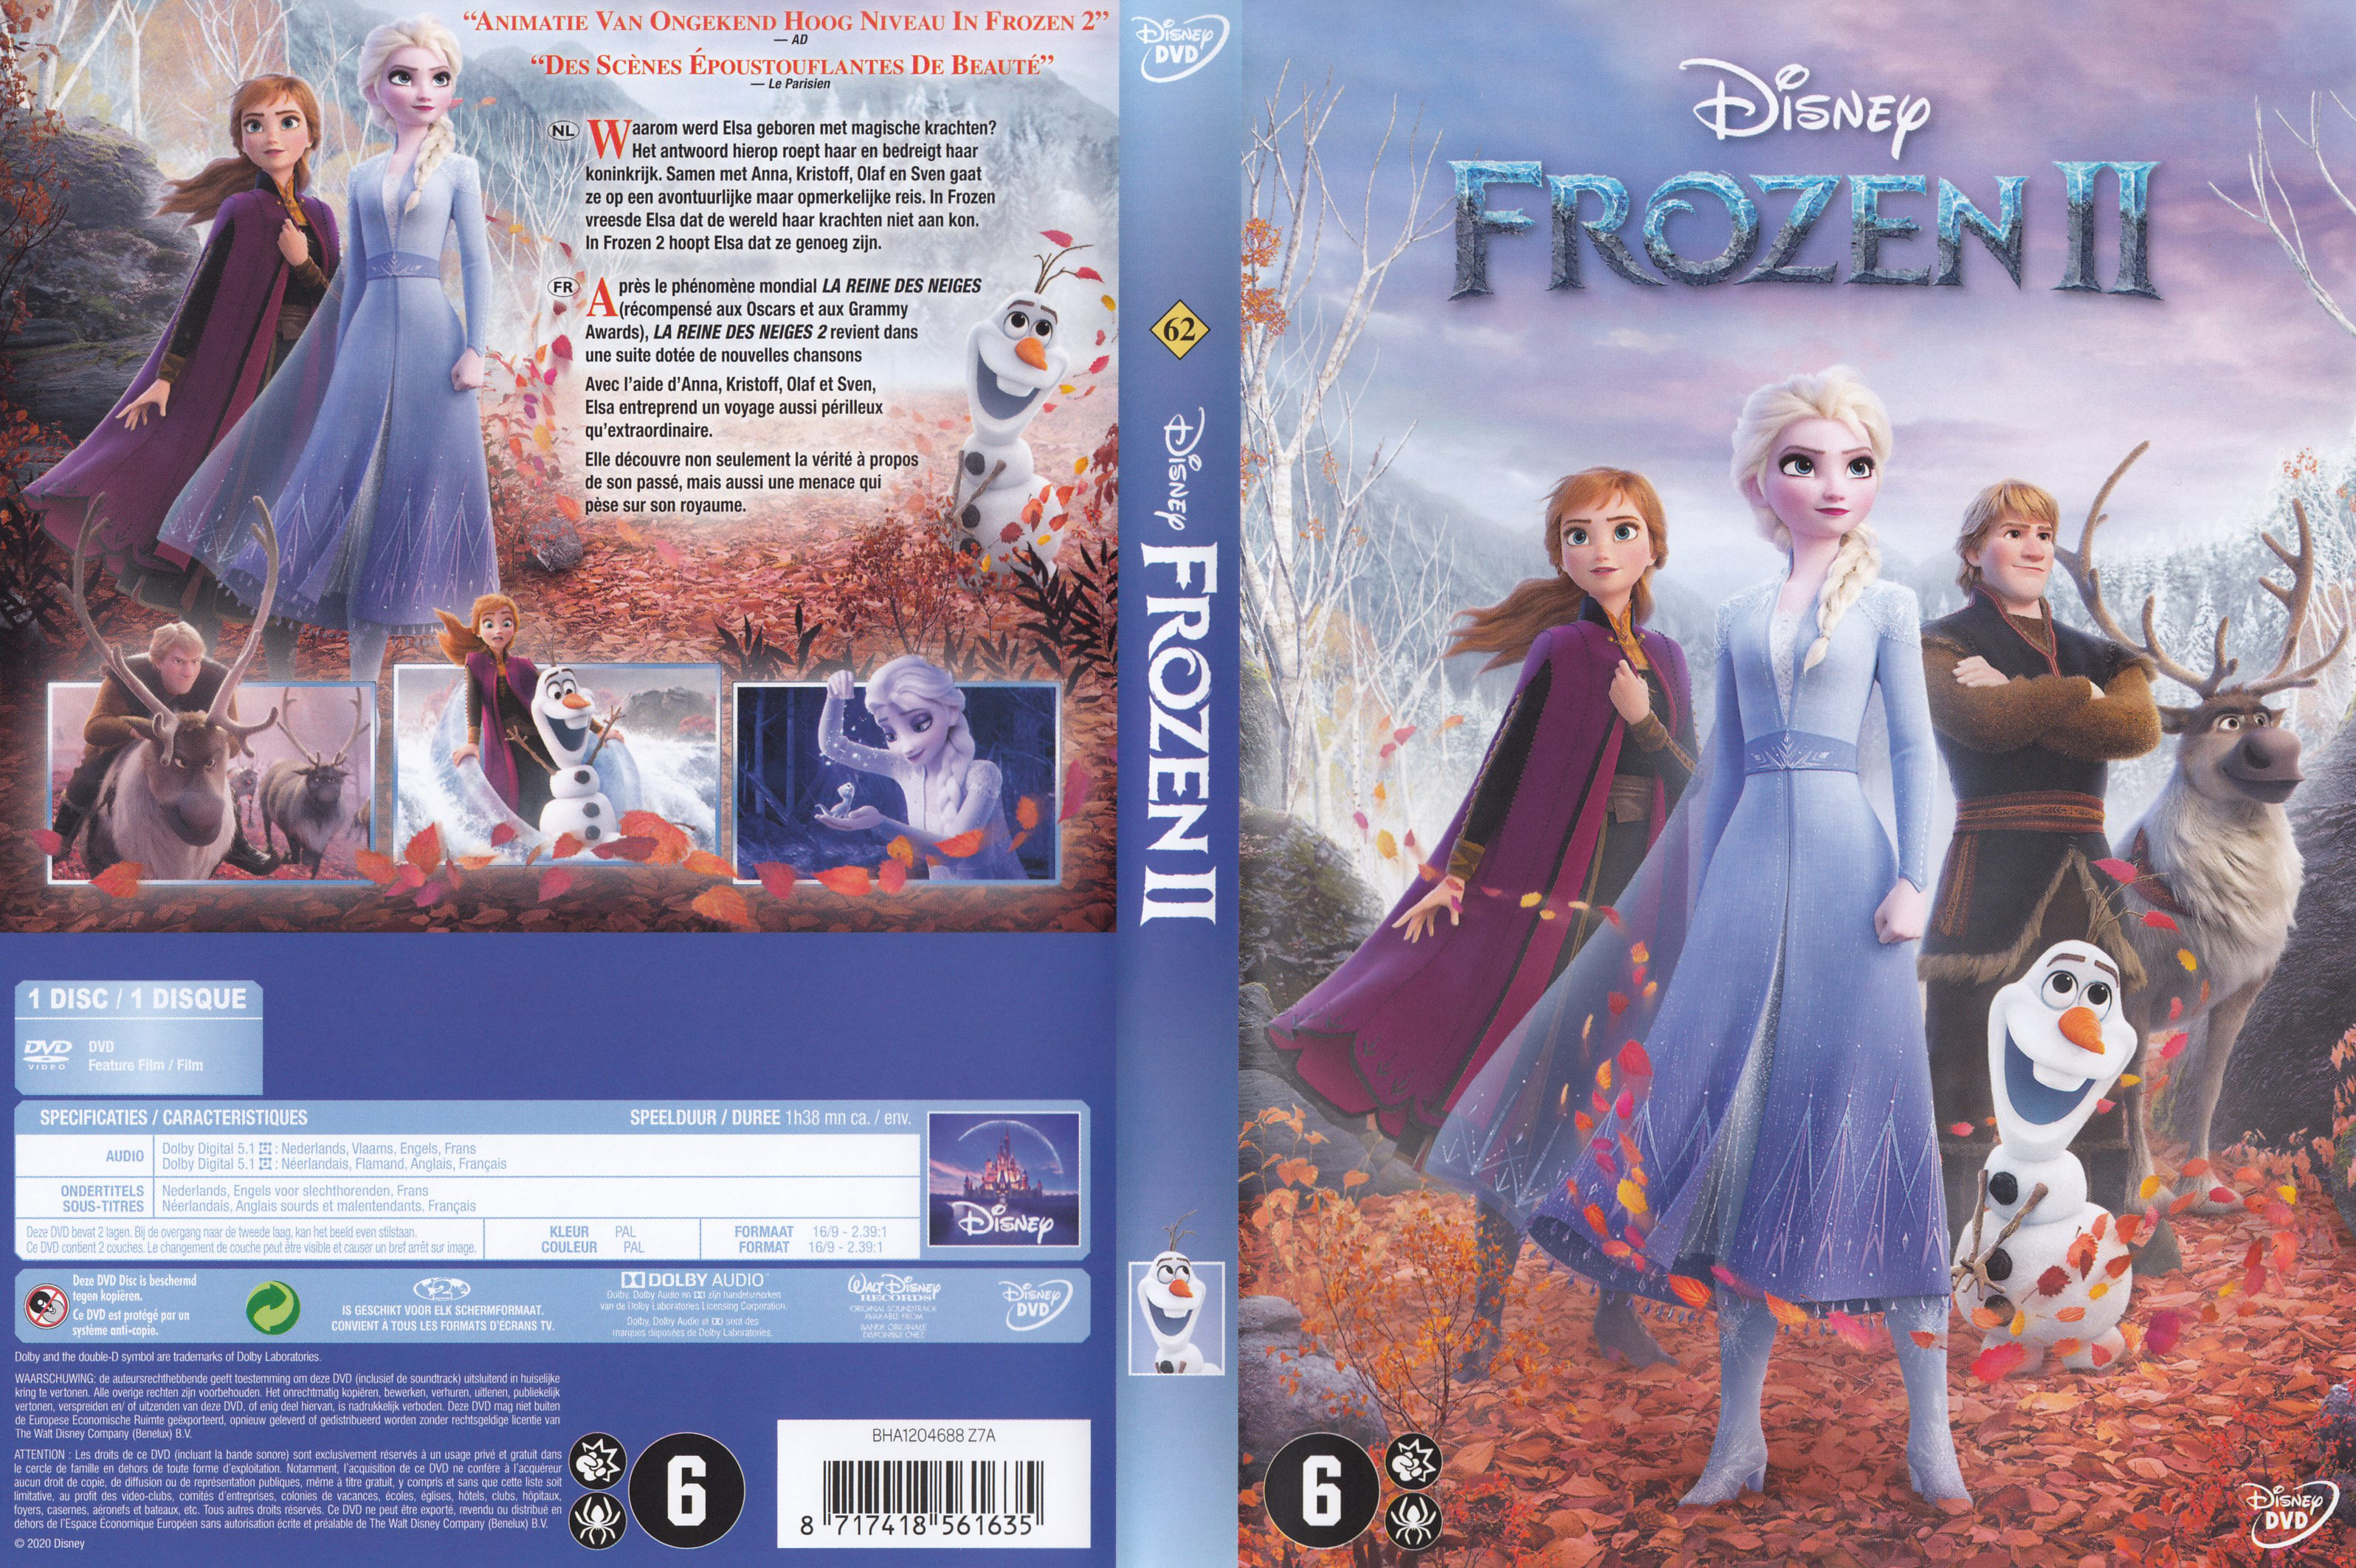 Jaquette DVD La reine des neiges II